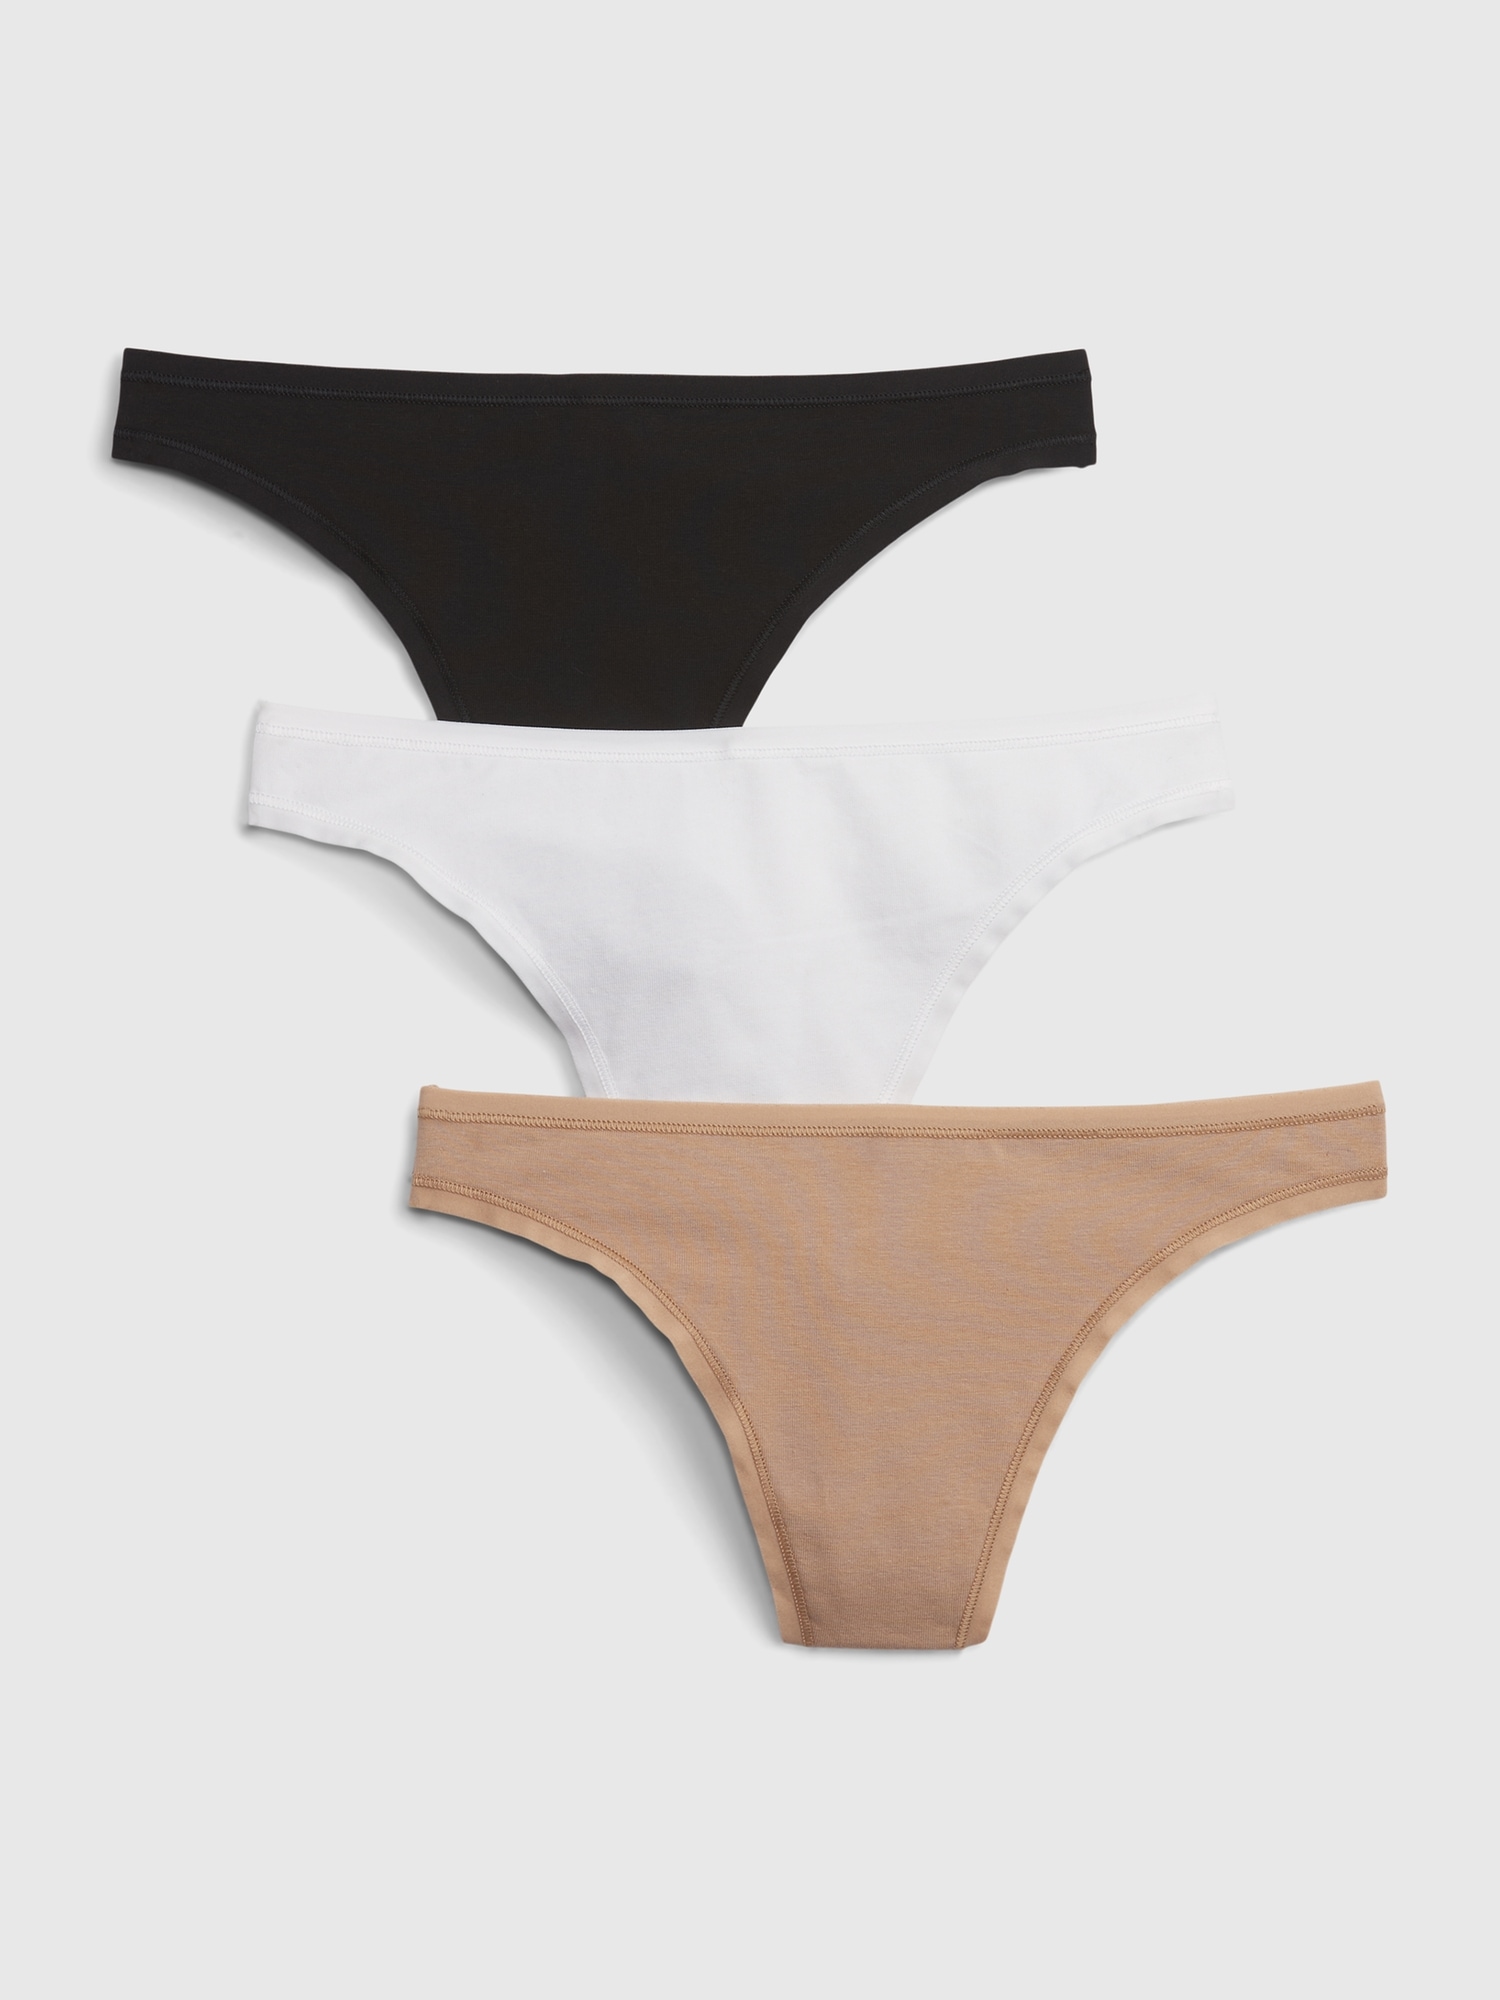 Low-Waist Thong in Beige – Minimalist Underwear